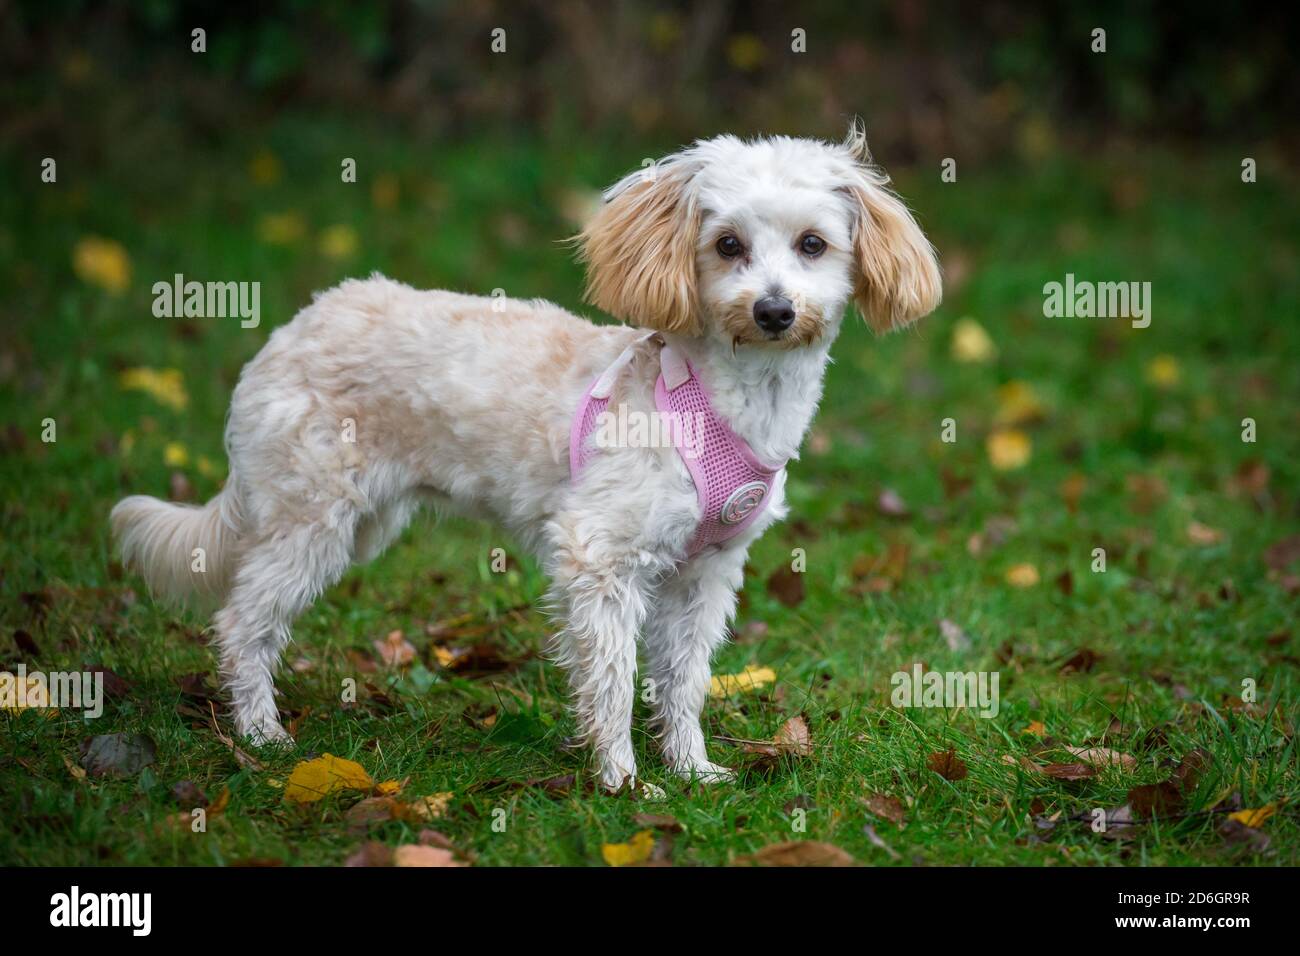 Maltipoo Welpe, ein Designer-Hund Rasse von Pudel x Maltese Hund, trägt einen rosa Hundegeschirr Stockfoto